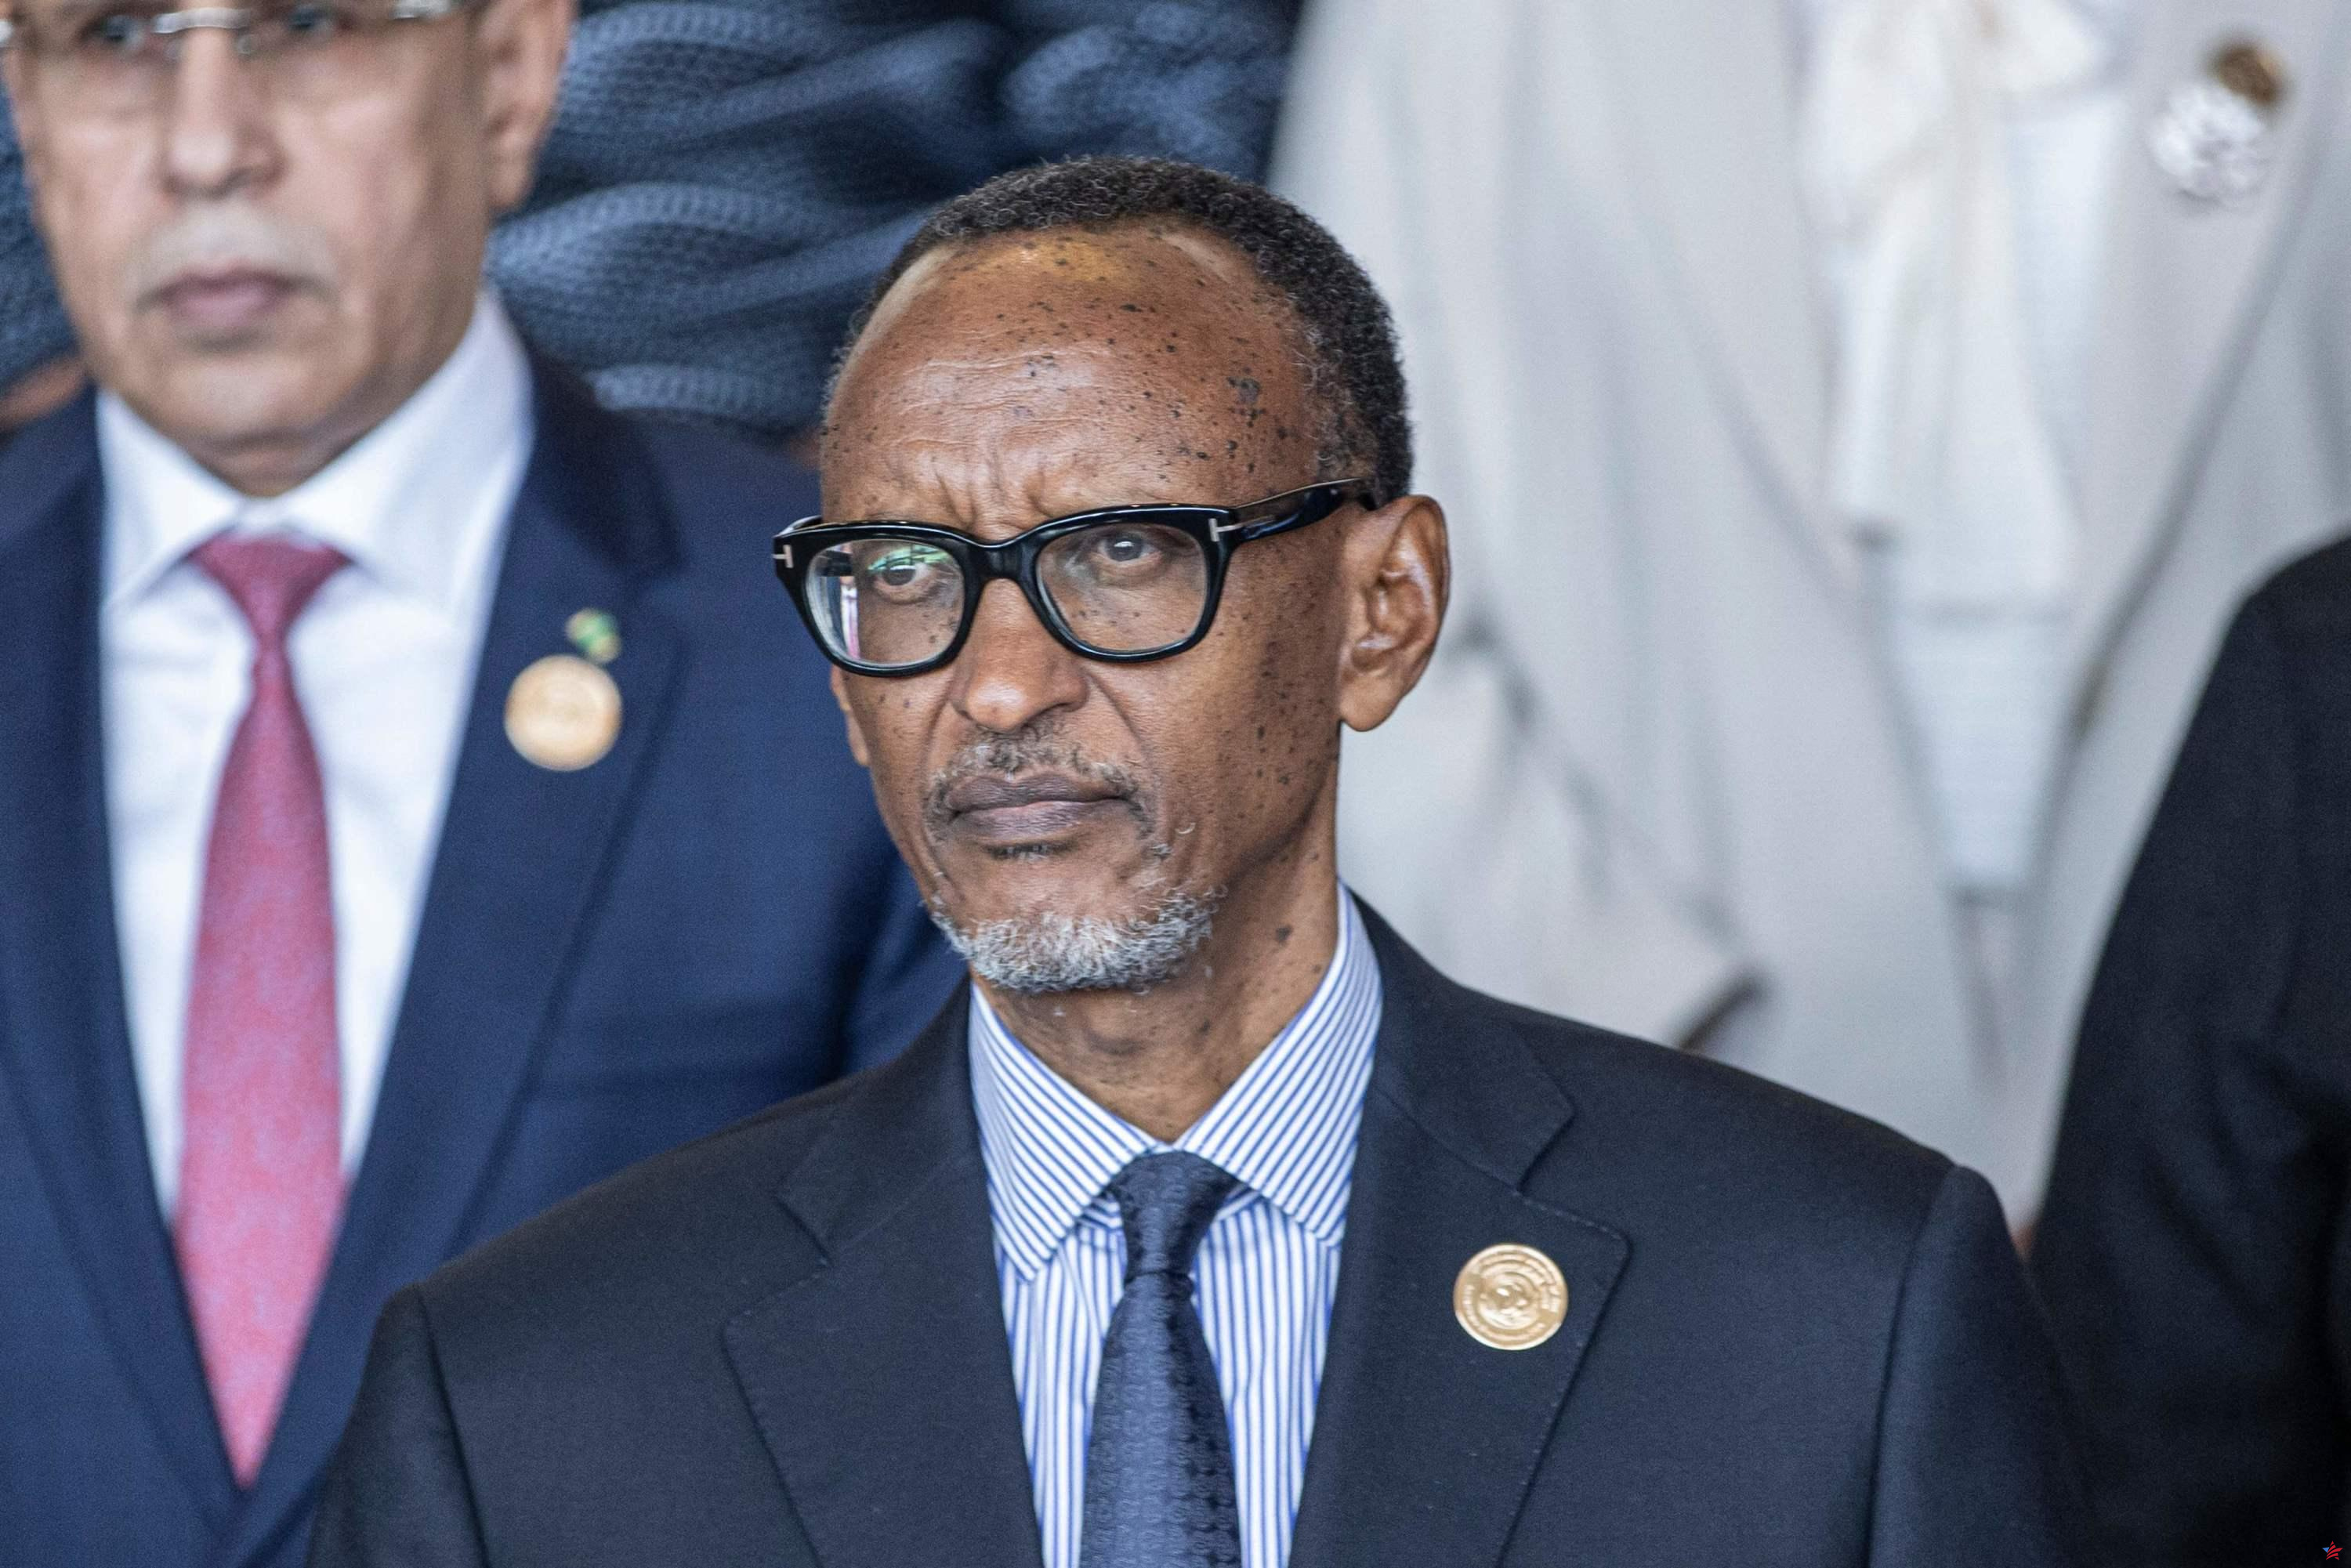 Ruanda: el partido gobernante nomina a Kagame como candidato presidencial